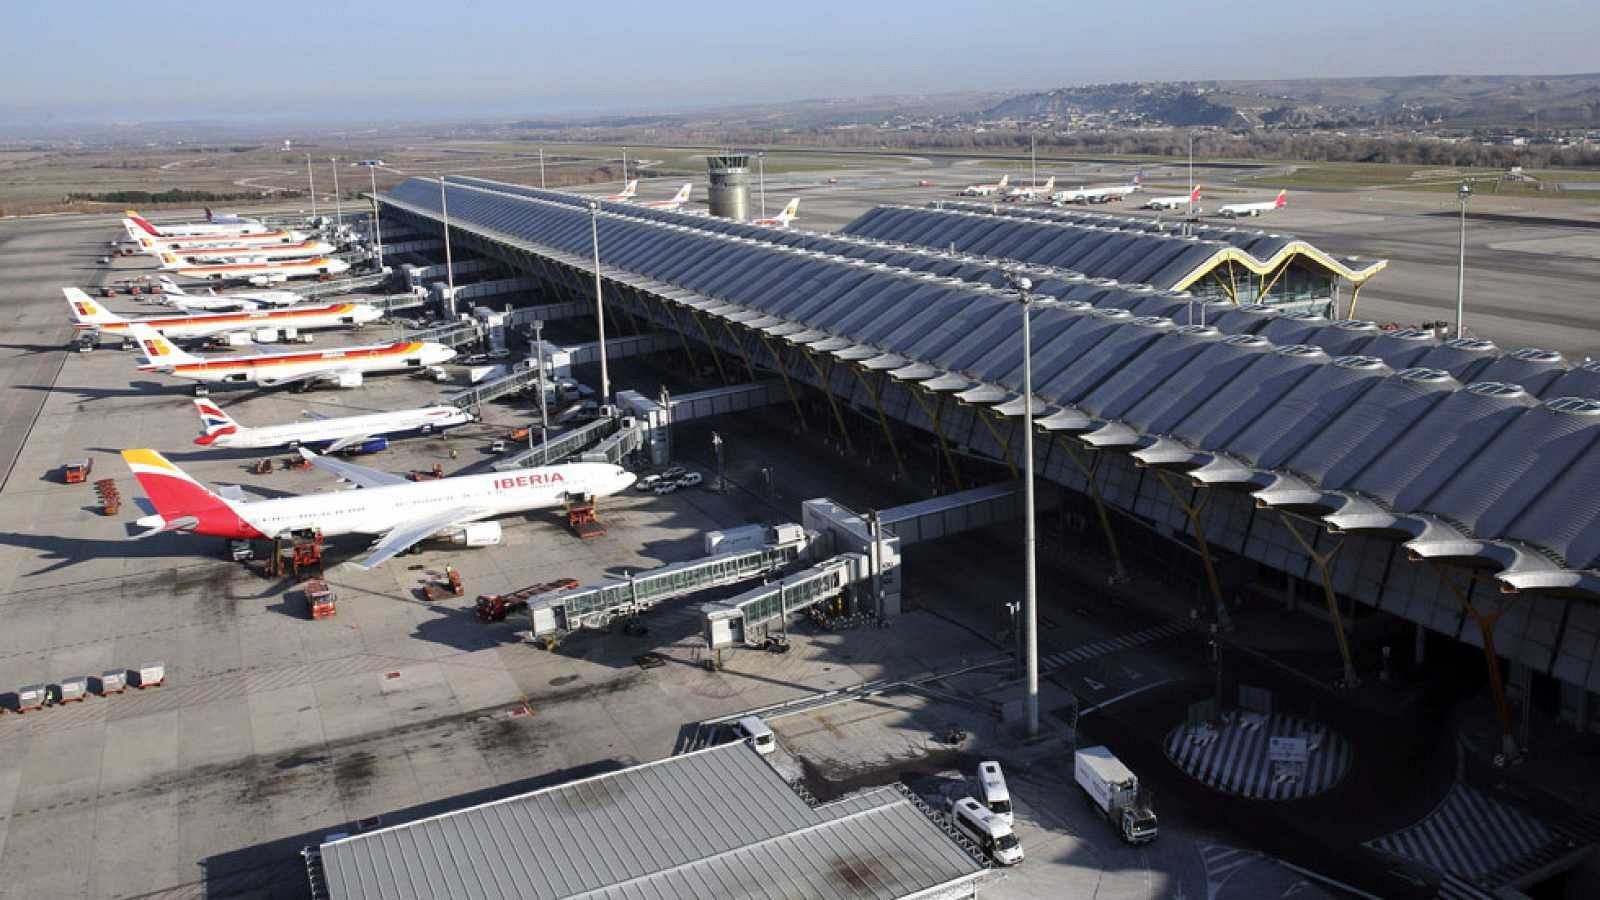 El aeropuerto de Barajas se convierte en un parking de aviones en 'cuarentena' - RTVE.es